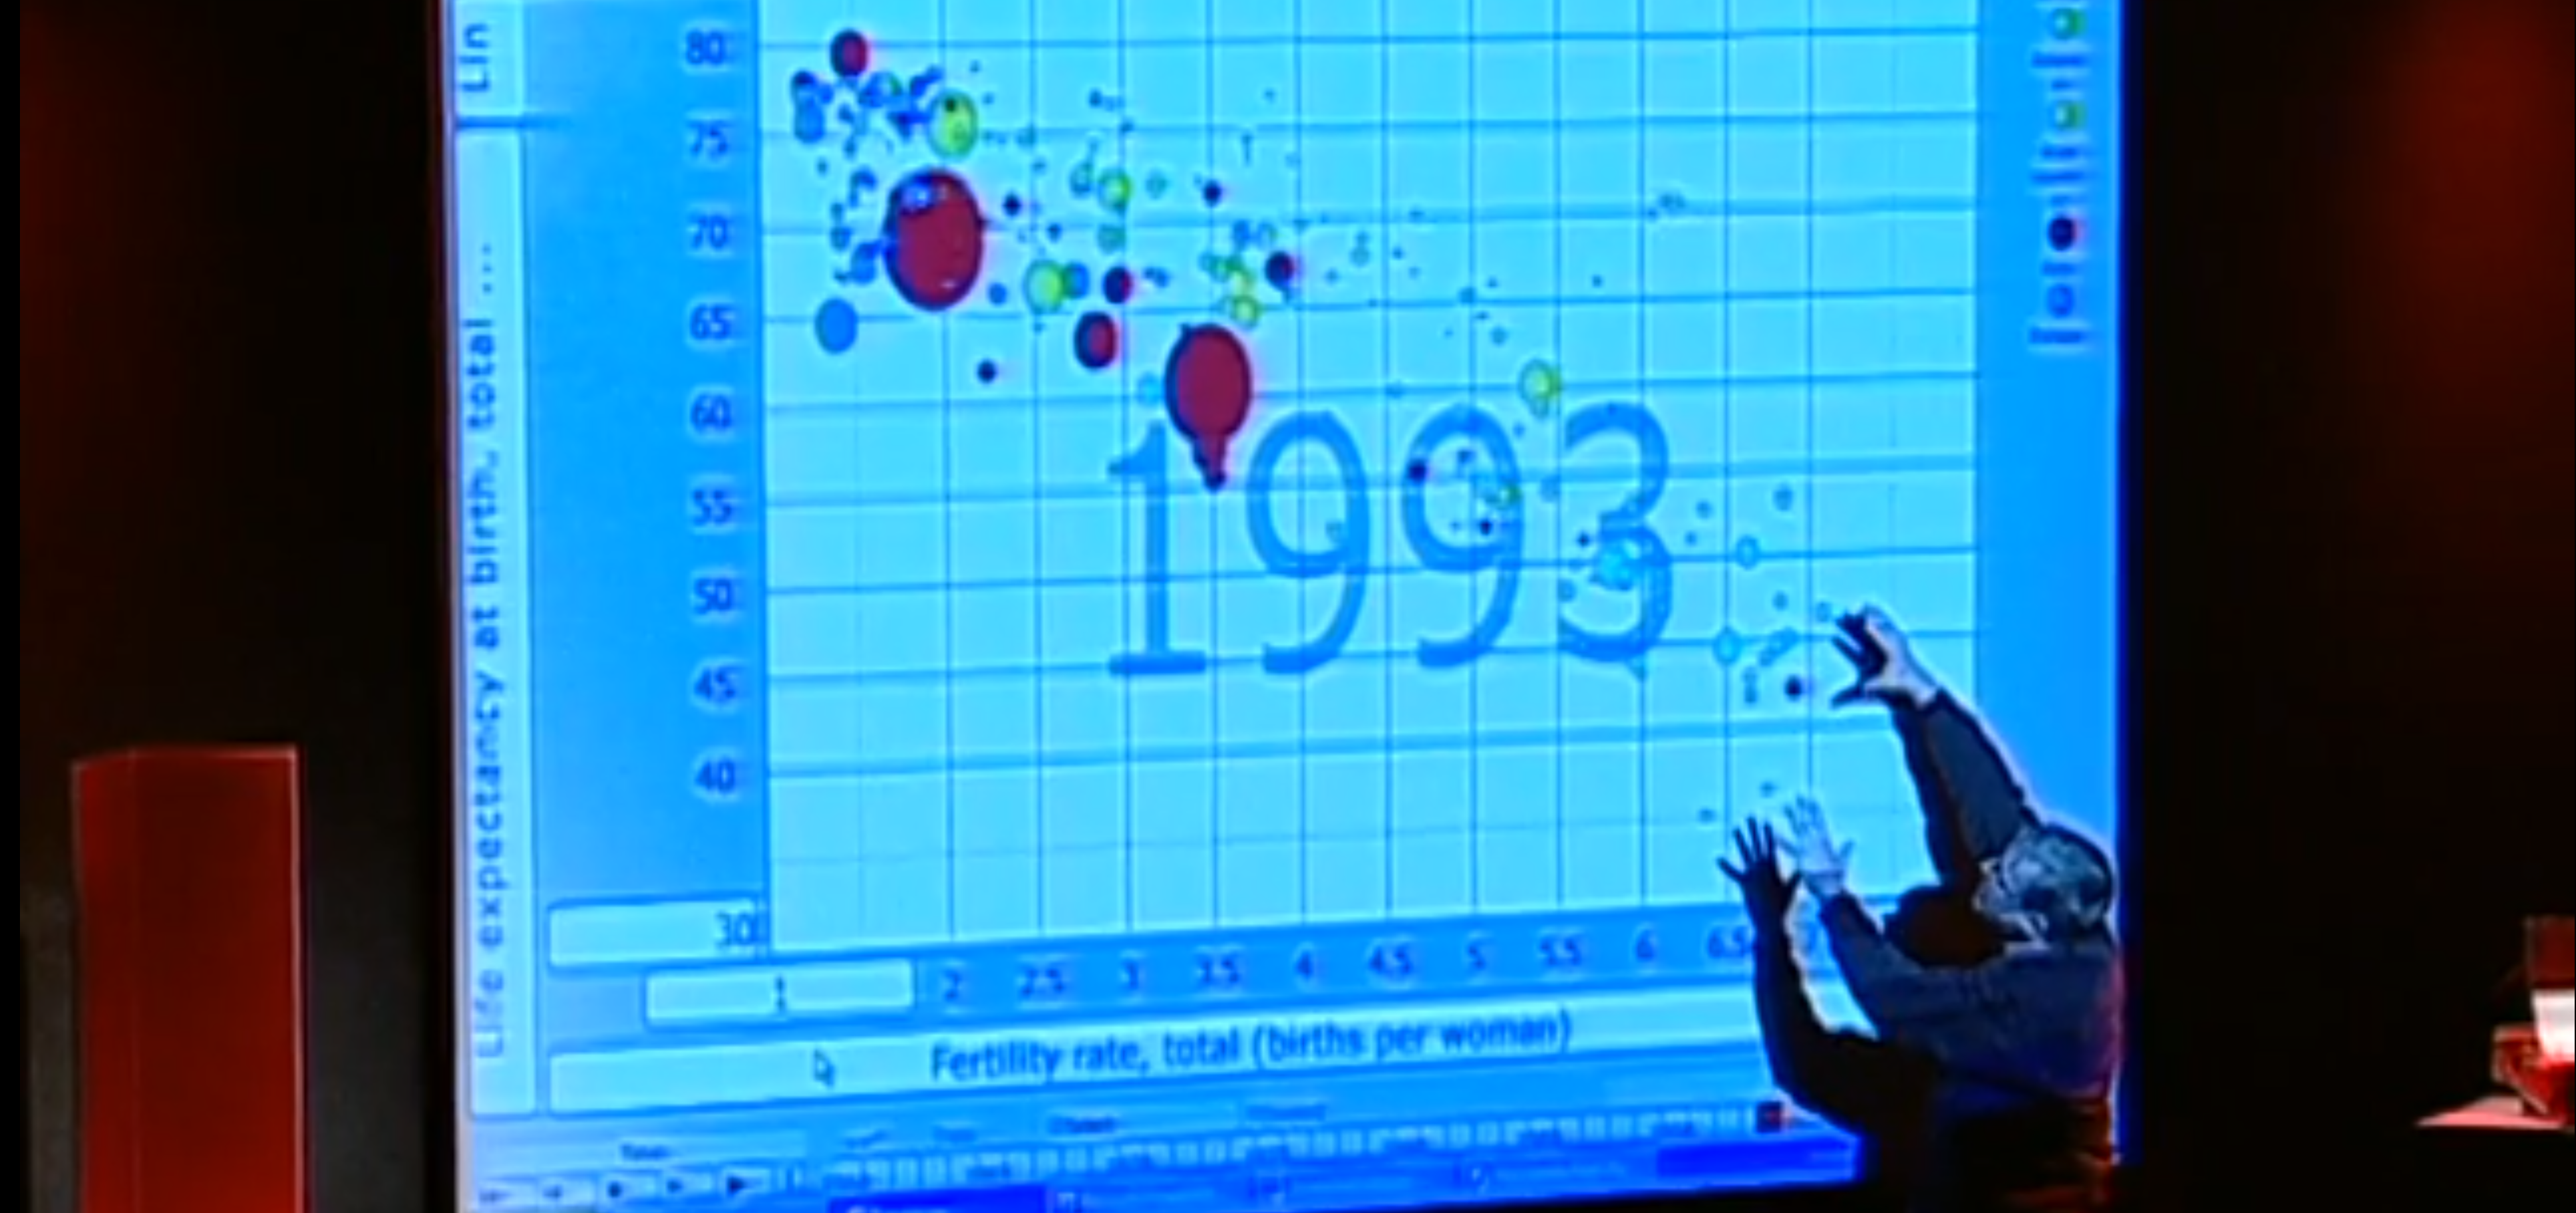 Hans Rosling "Casting" Data